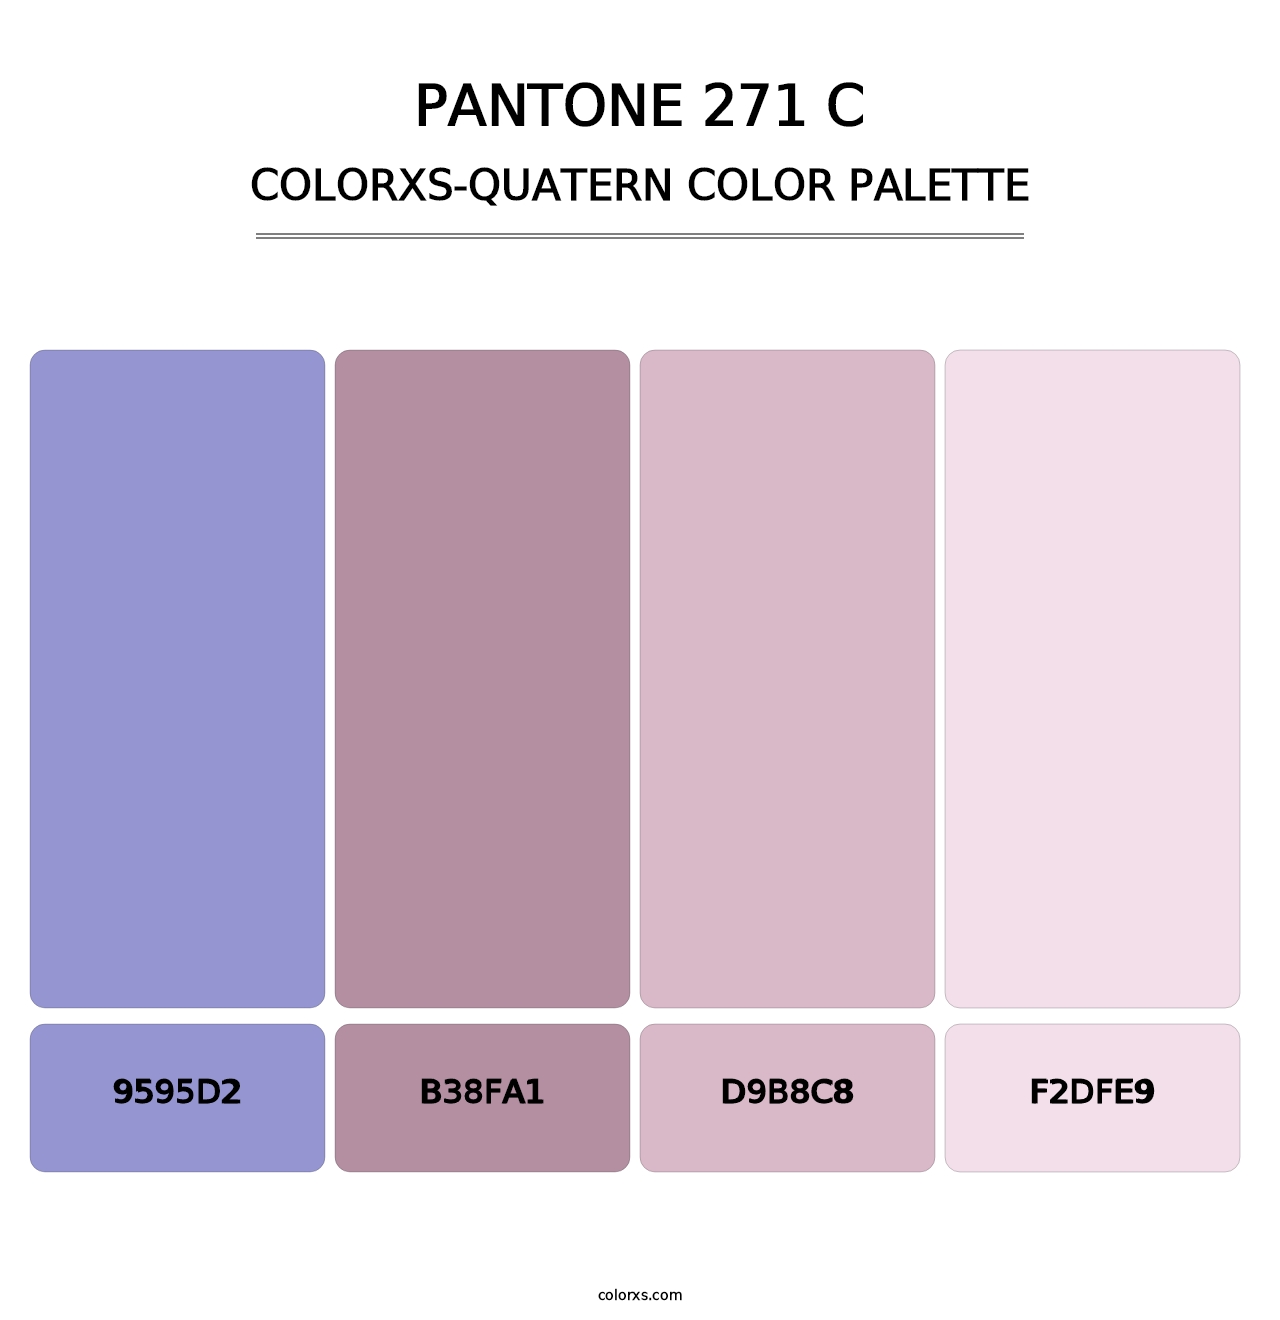 PANTONE 271 C - Colorxs Quatern Palette